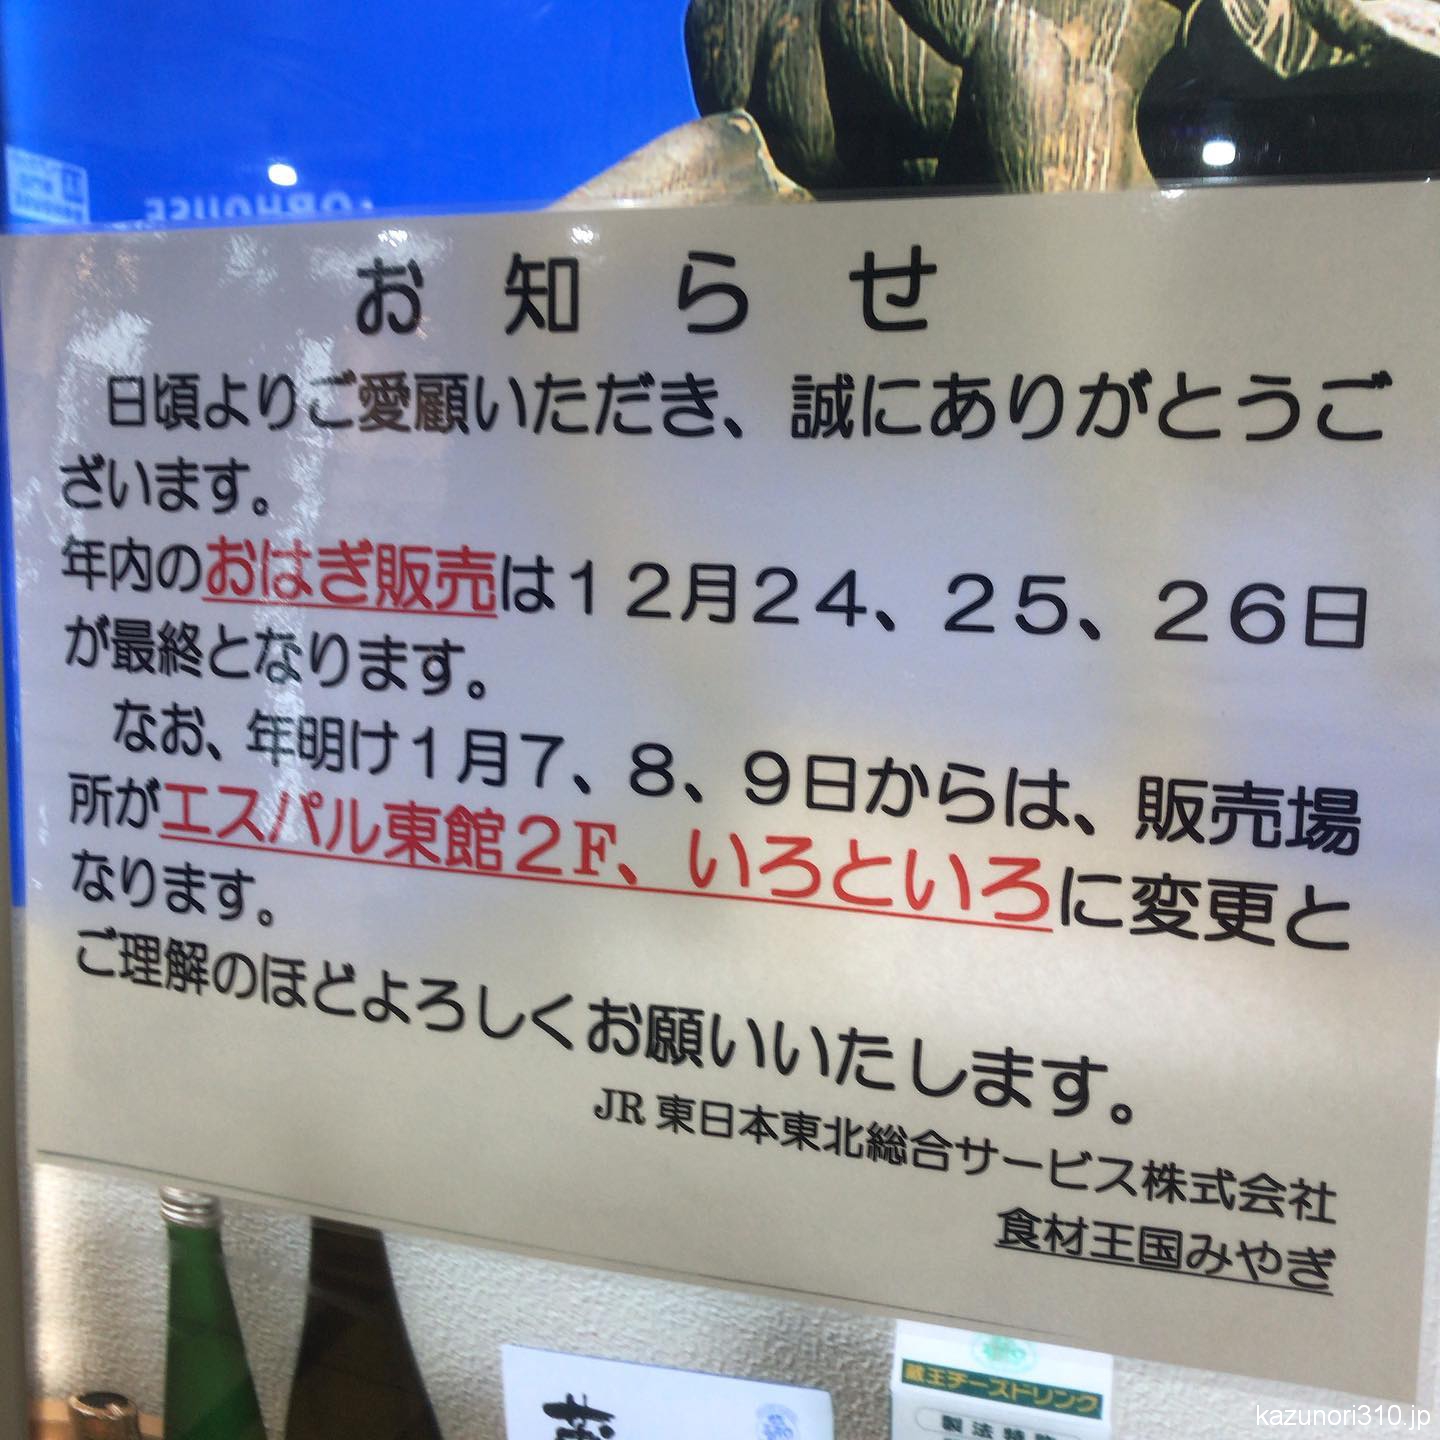 #仙台駅 #おはぎ売り場 変更